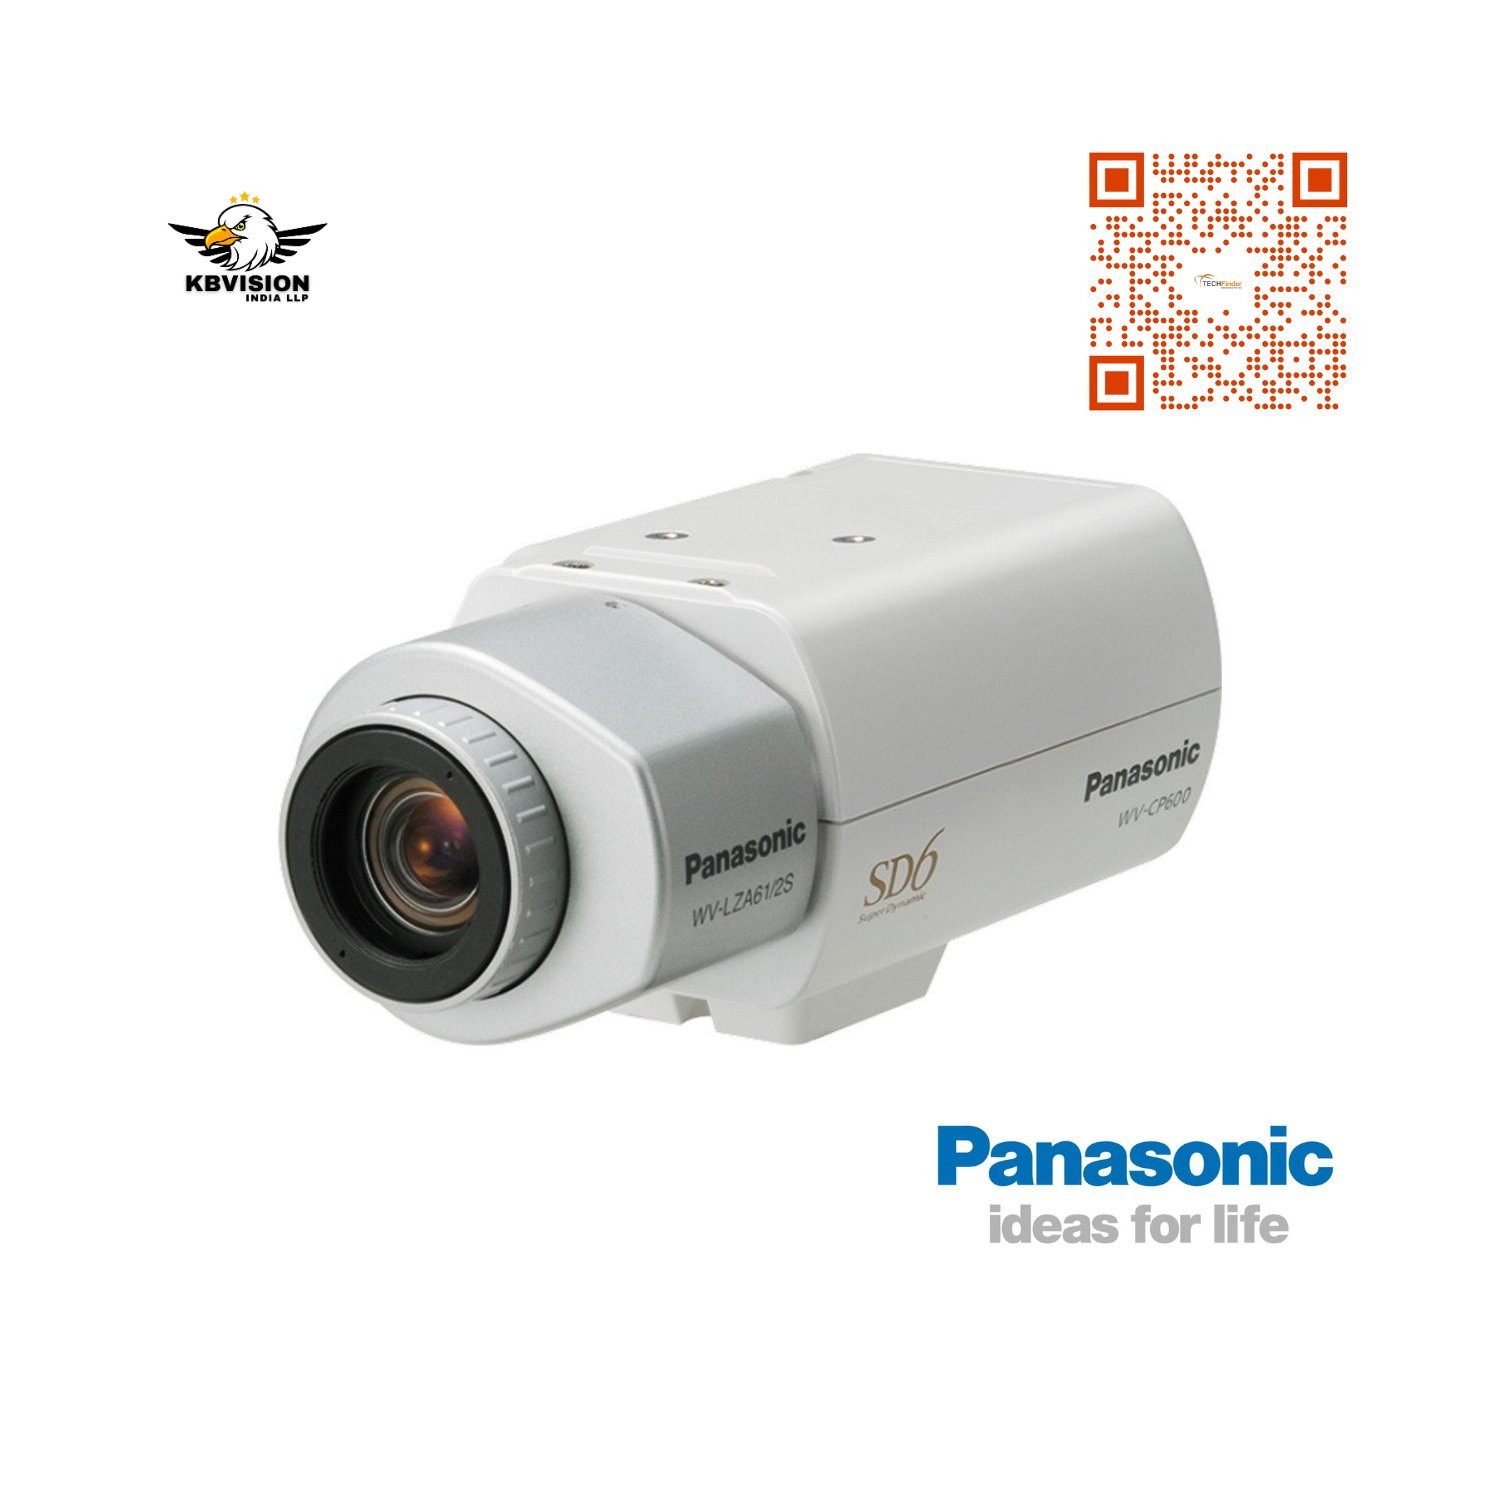 Panasonic WV-CP600 Day/Night Fixed CS Mount Camera